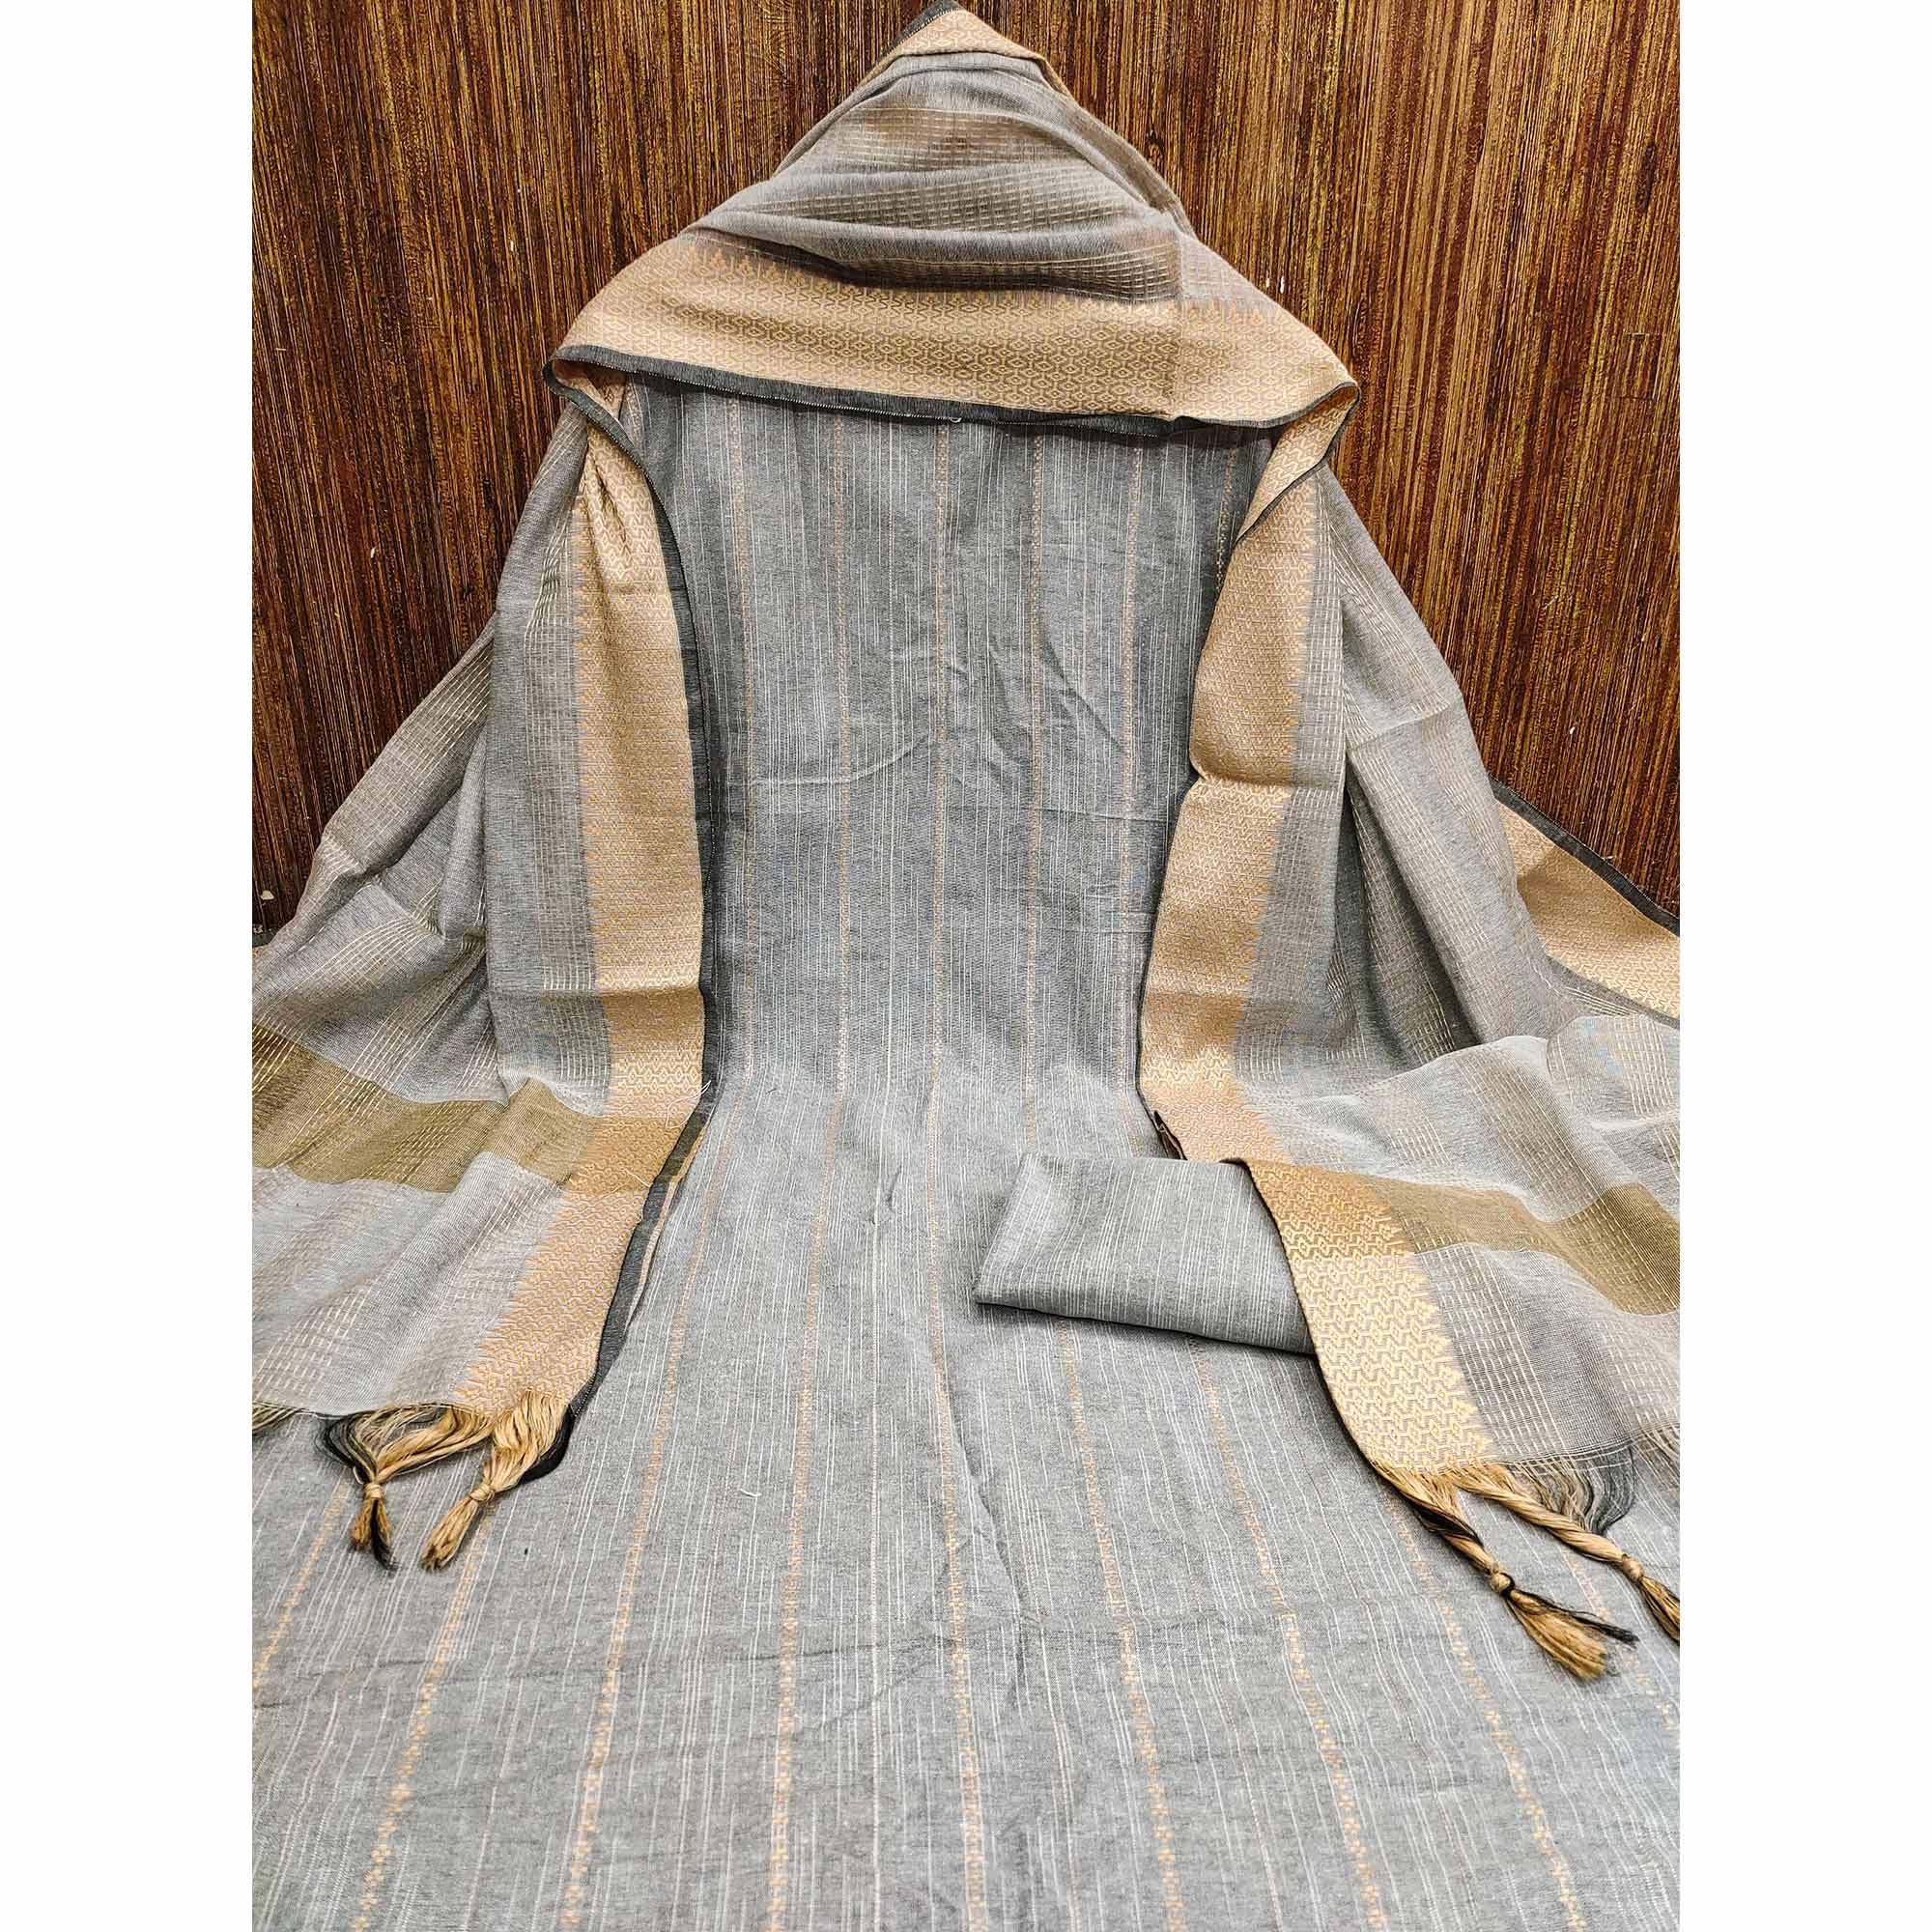 Grey Woven Cotton Blend Dress Material